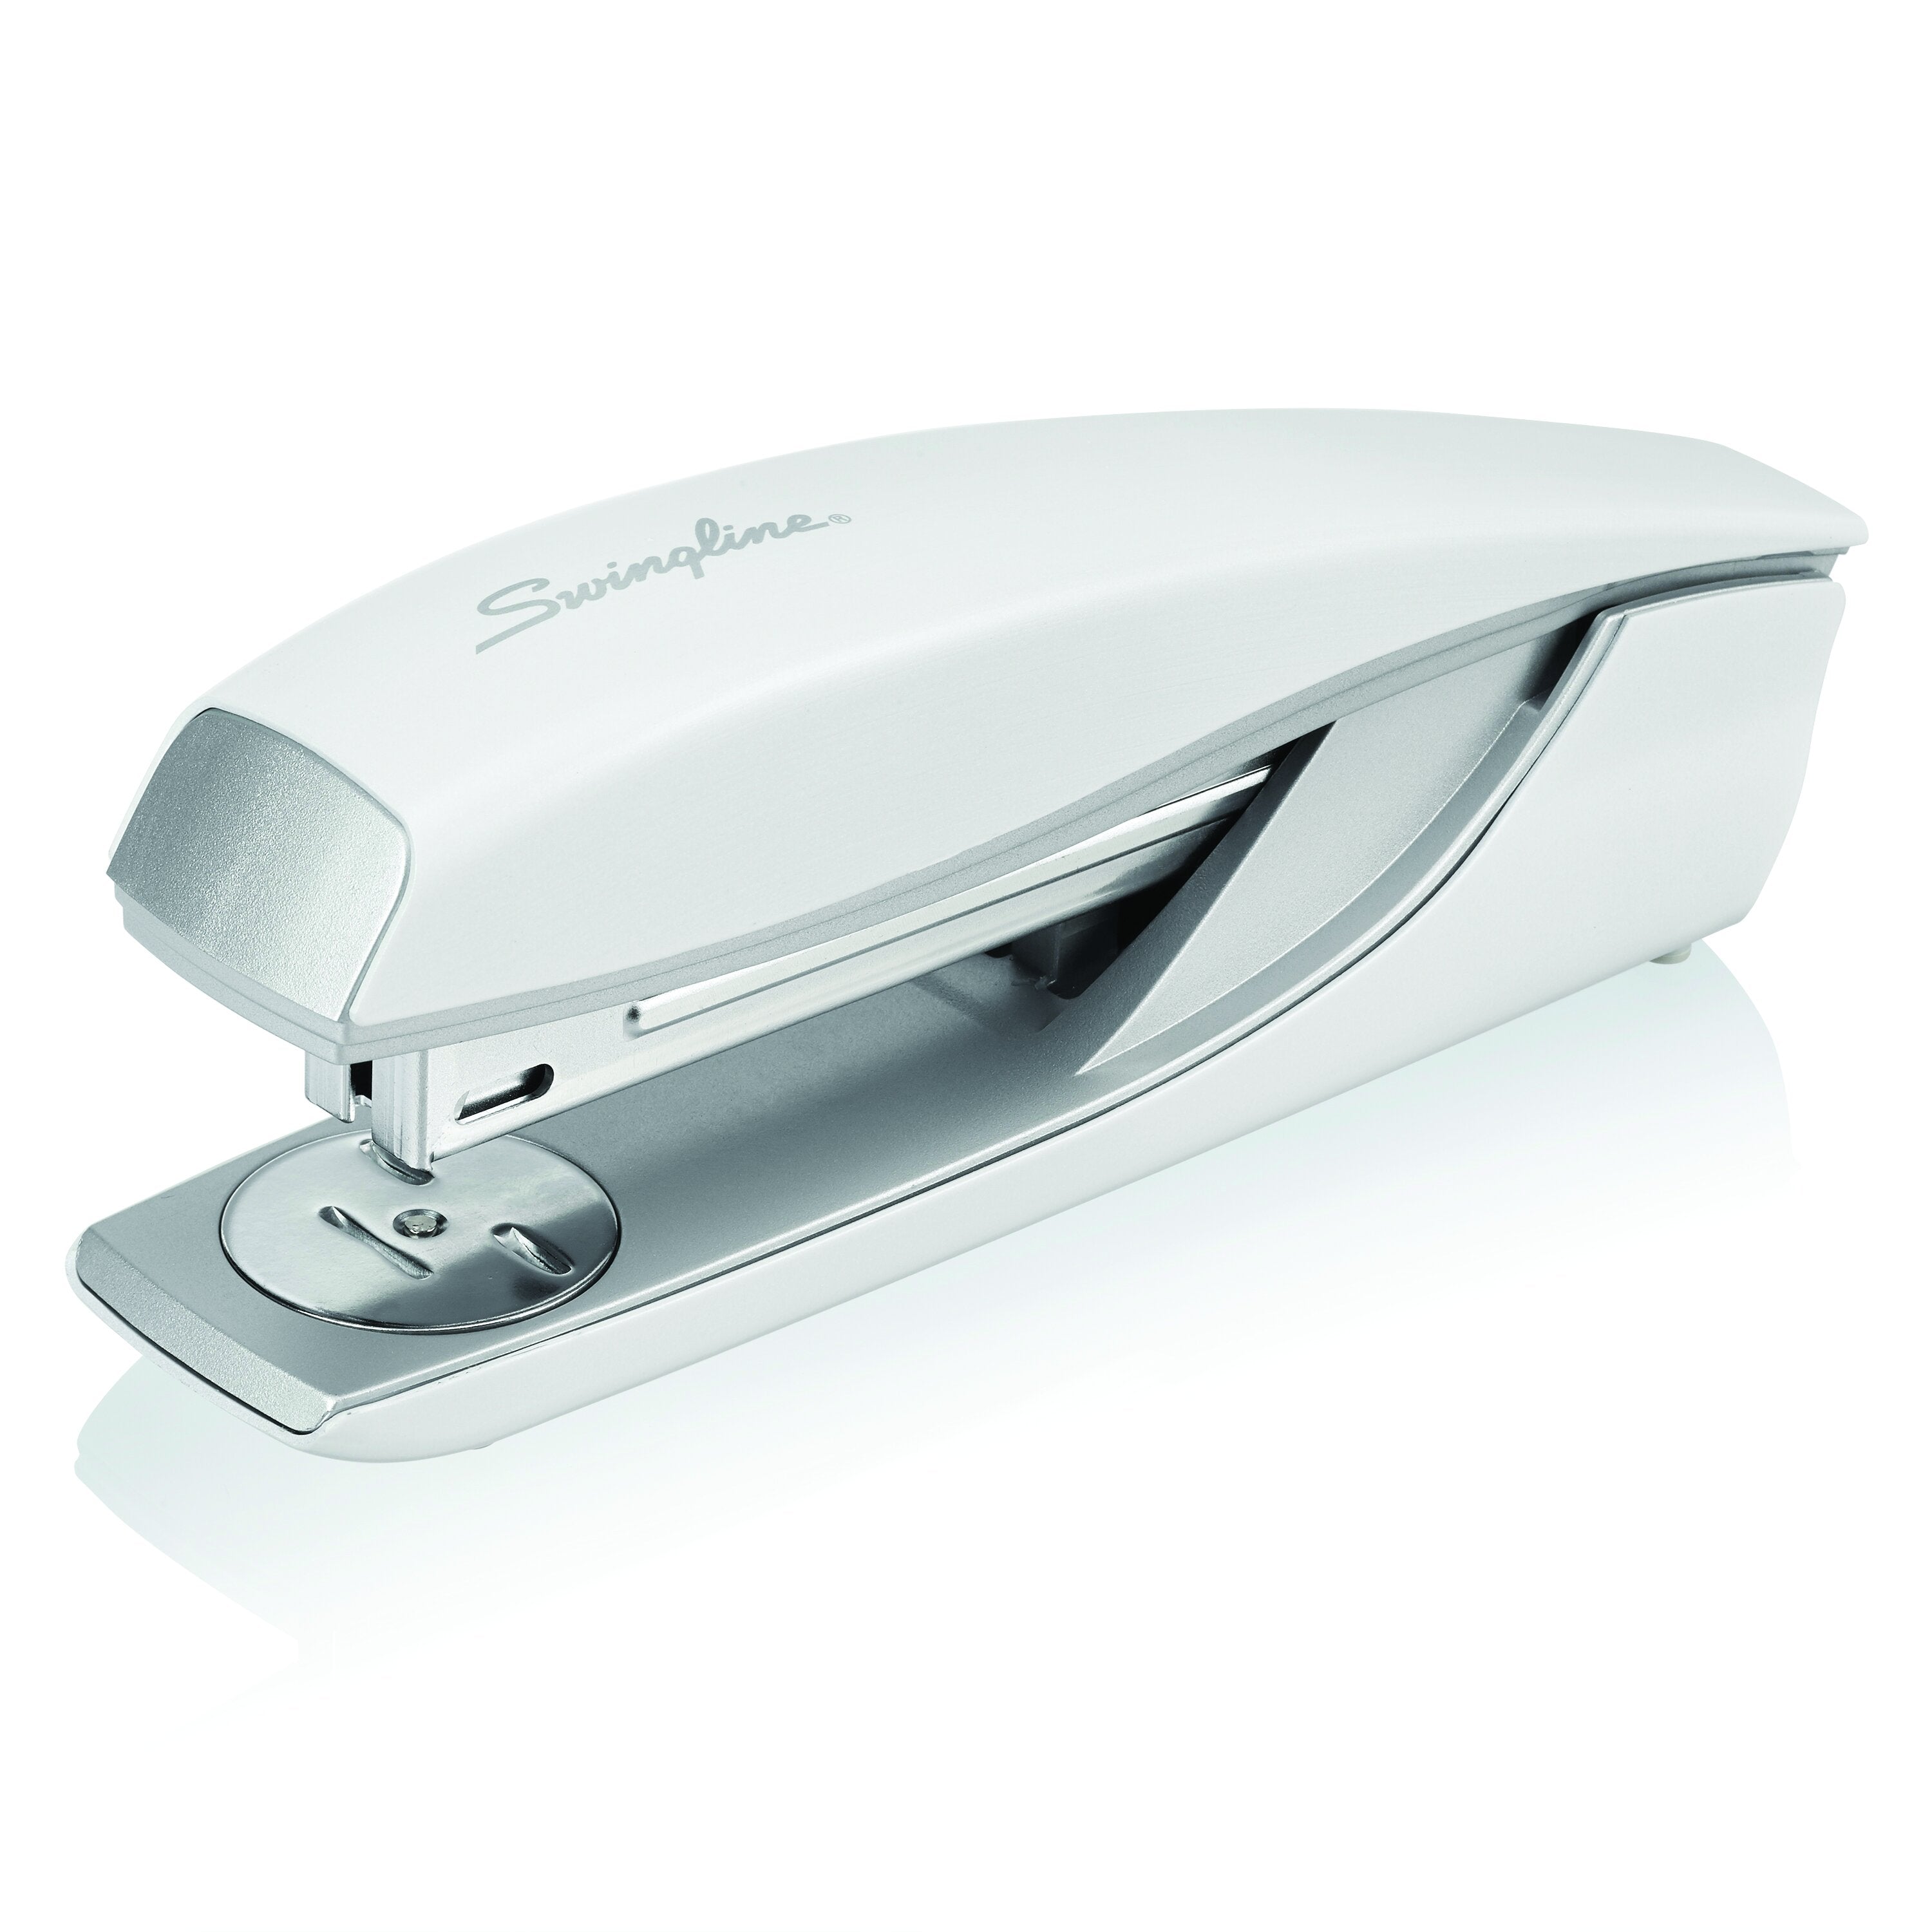 Swingline® NeXXt Series Style Desktop Stapler, Model 40, White